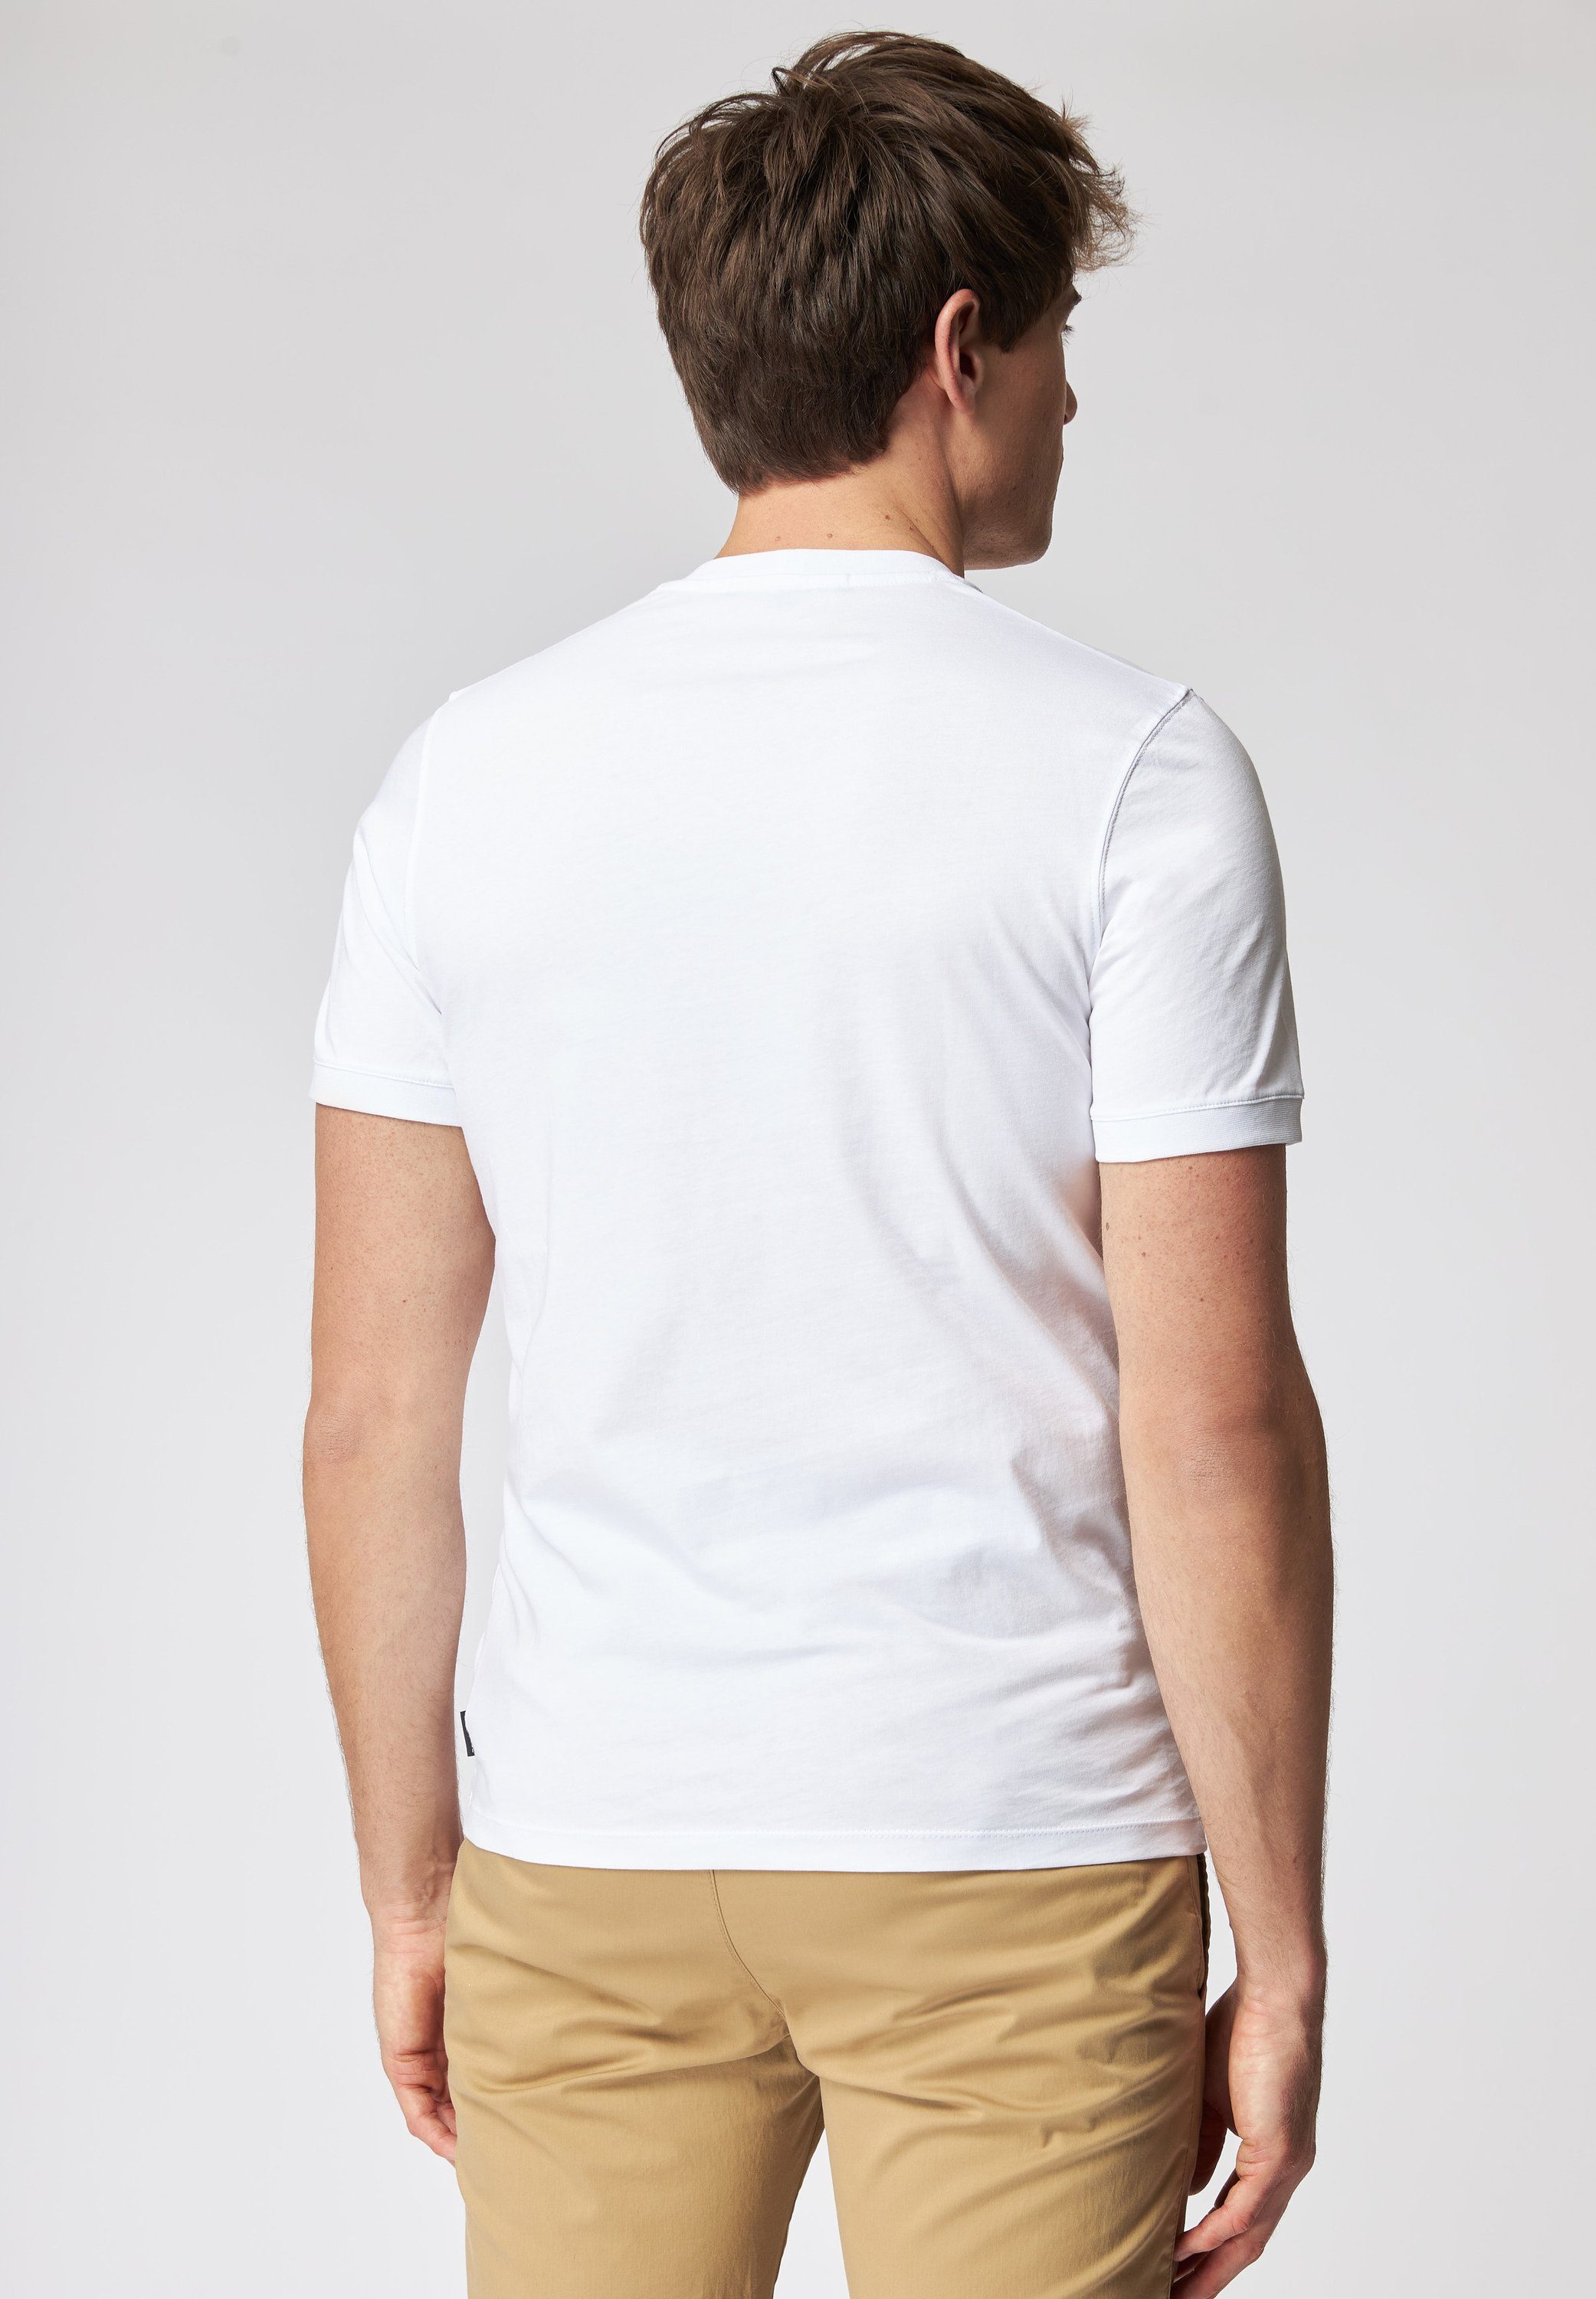 Roy - Frontprint Weicher white Robson T-Shirt Griff